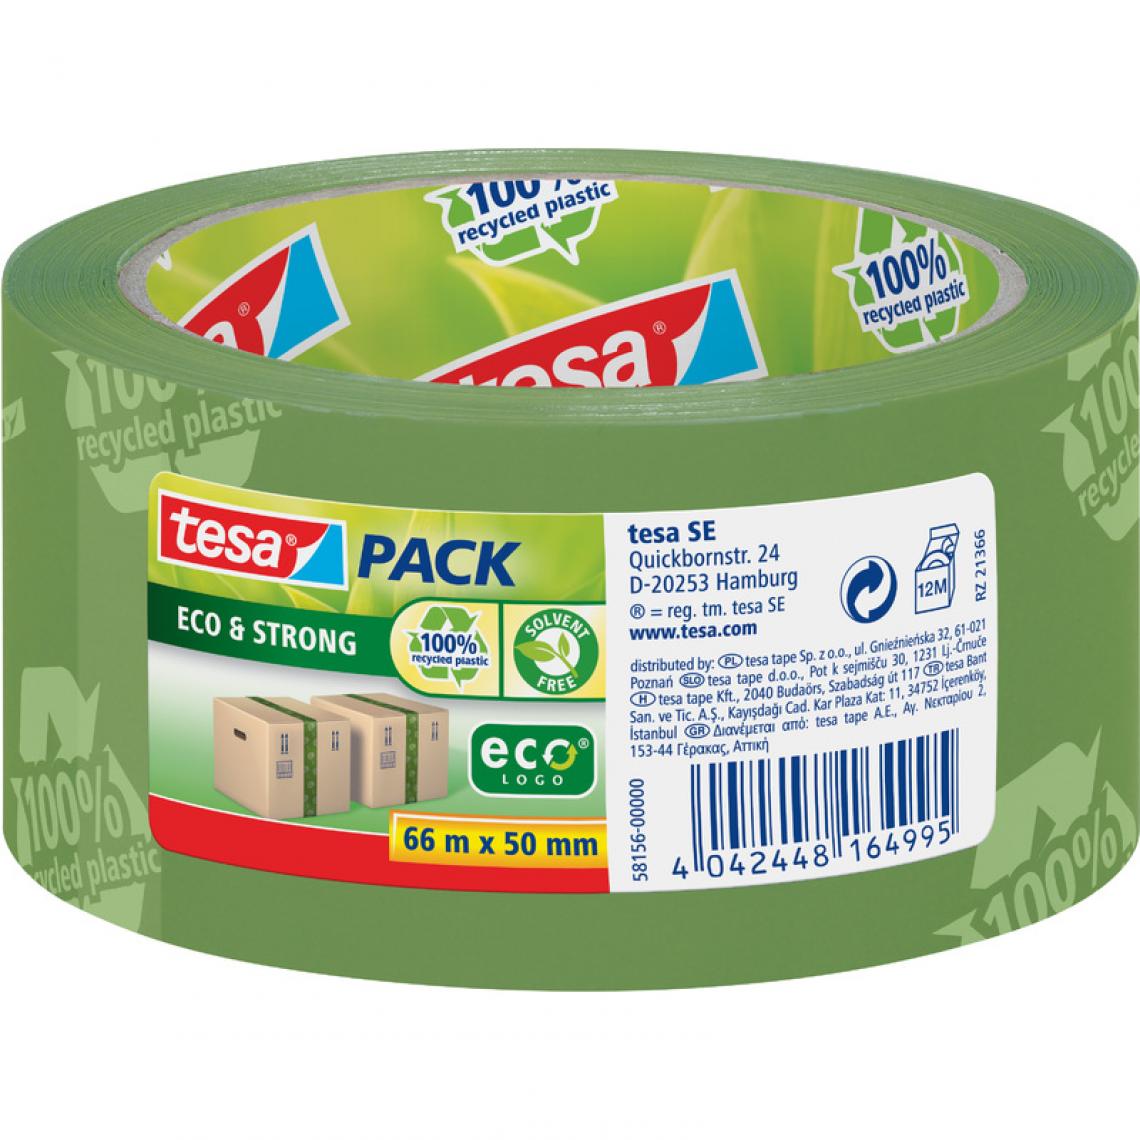 Tesa - tesa tesapack Ruban adhésif Eco & Strong, 50 mm x 66m () - Adhésif d'emballage